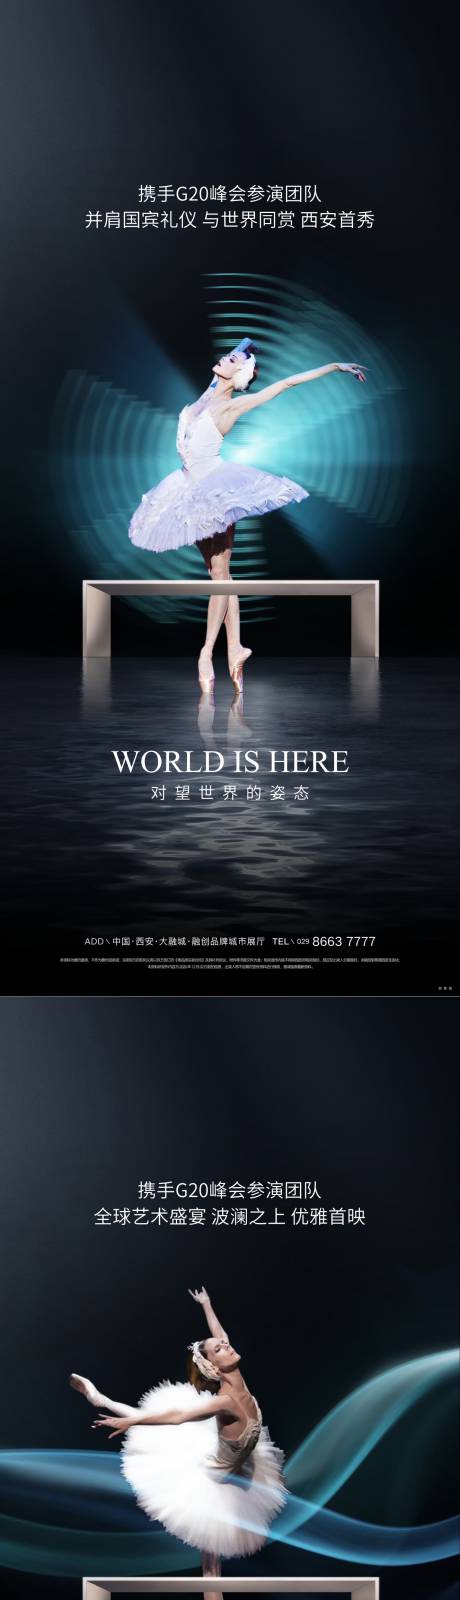 天鹅湖芭蕾舞系列海报